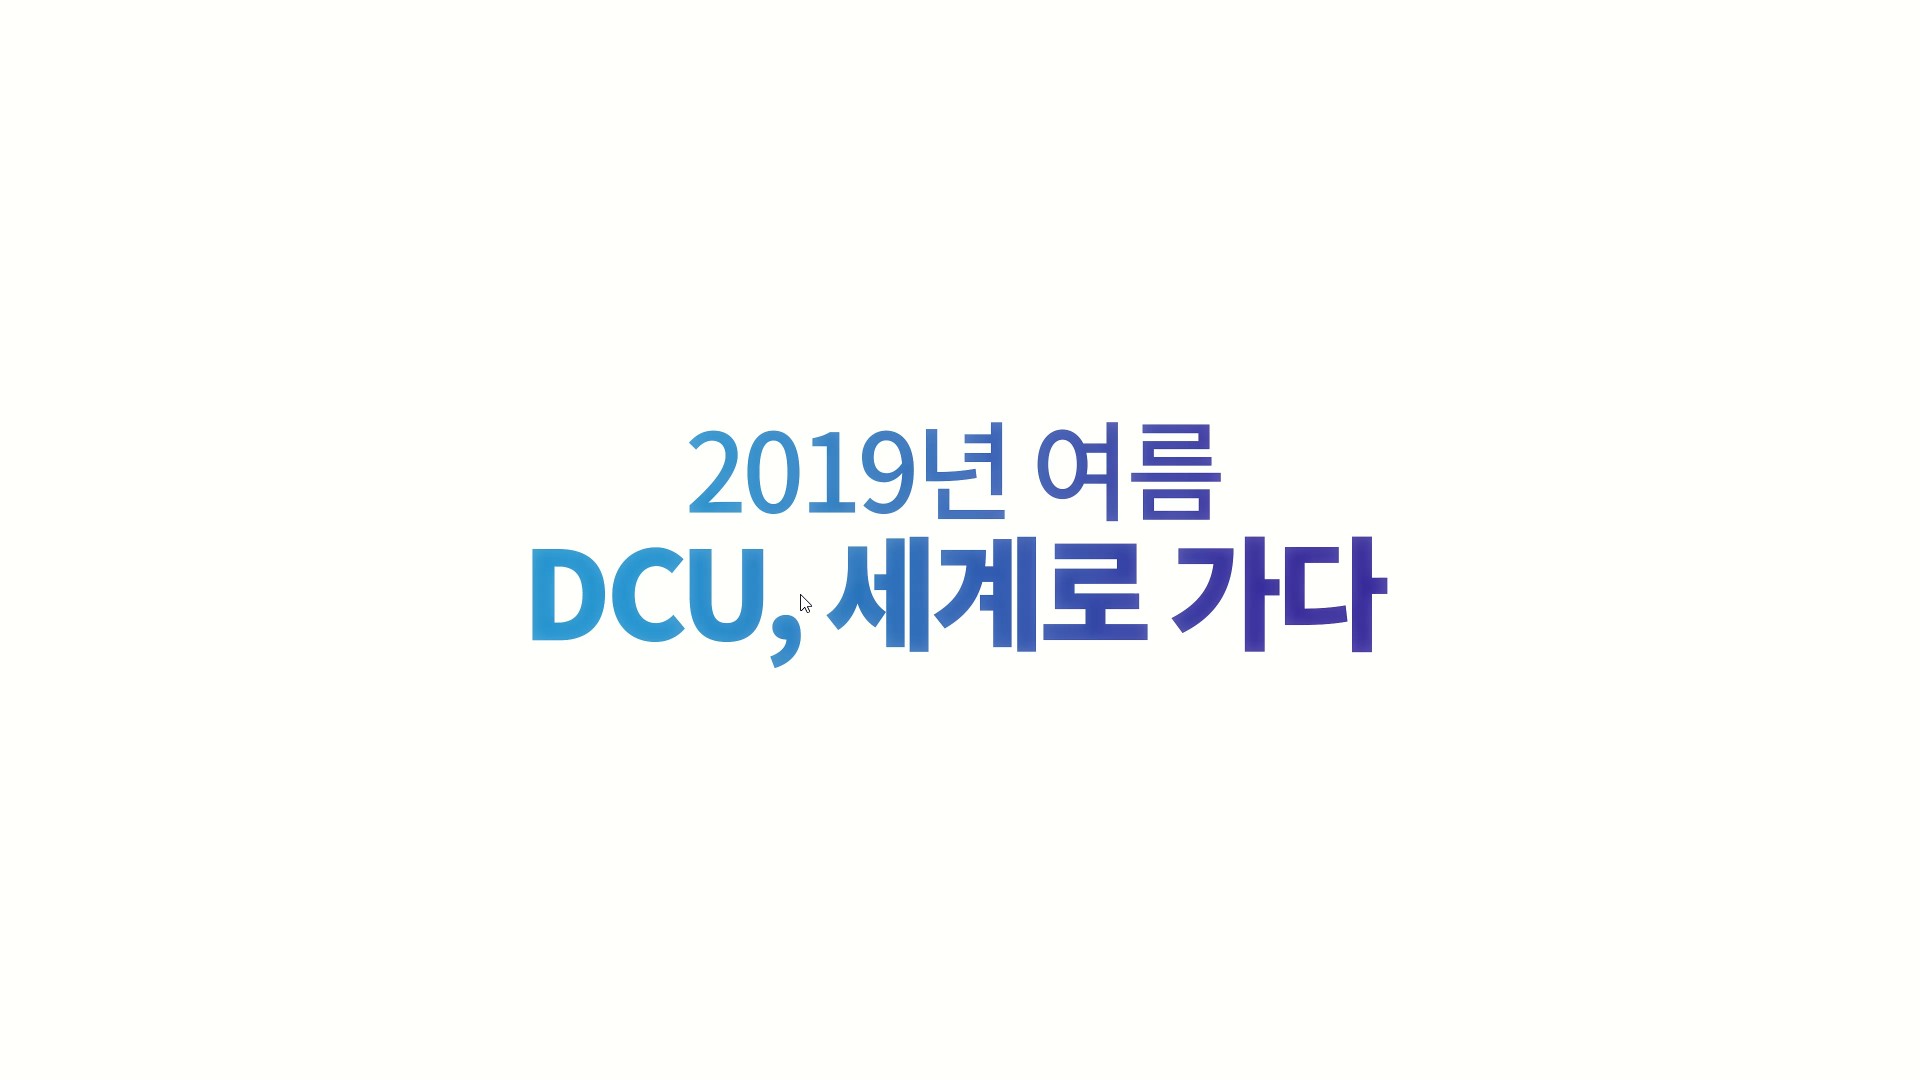 2019 DCU Summer Vacation 해외파견프로그램 스케치 영상